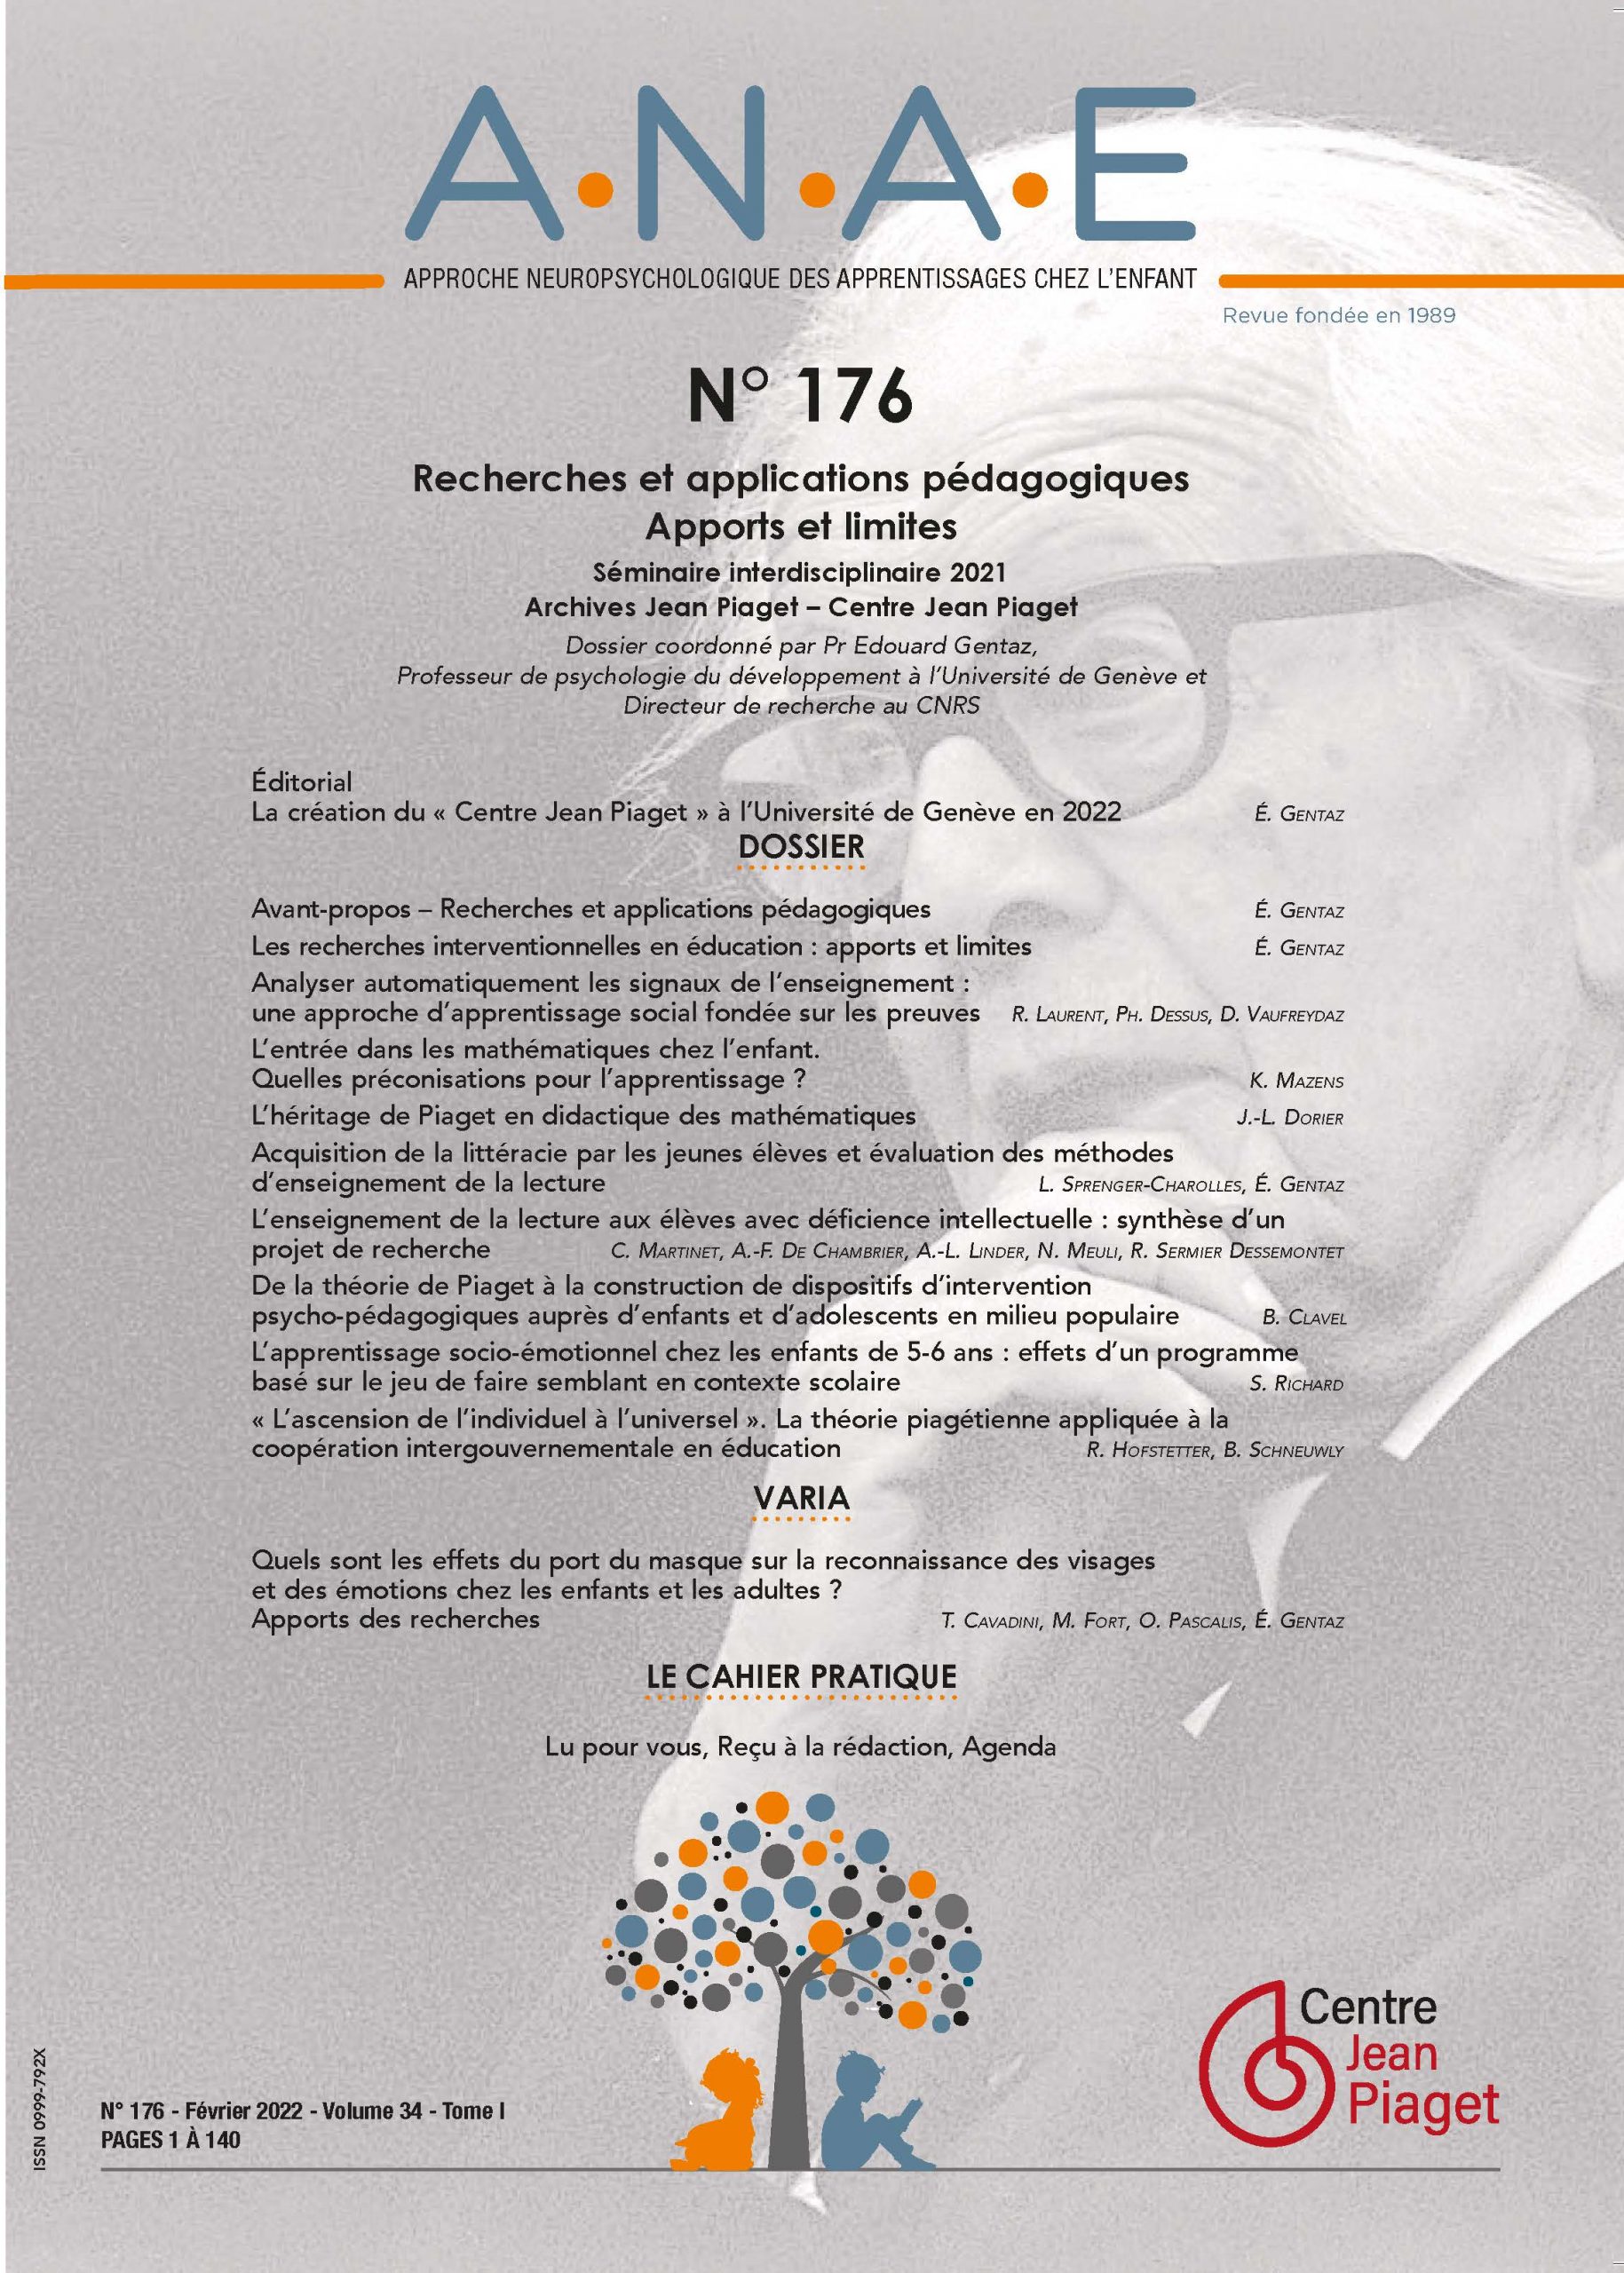 ANAE N° 176 – Recherches et applications pédagogiques - Apports et limites - Séminaire Jean Piaget